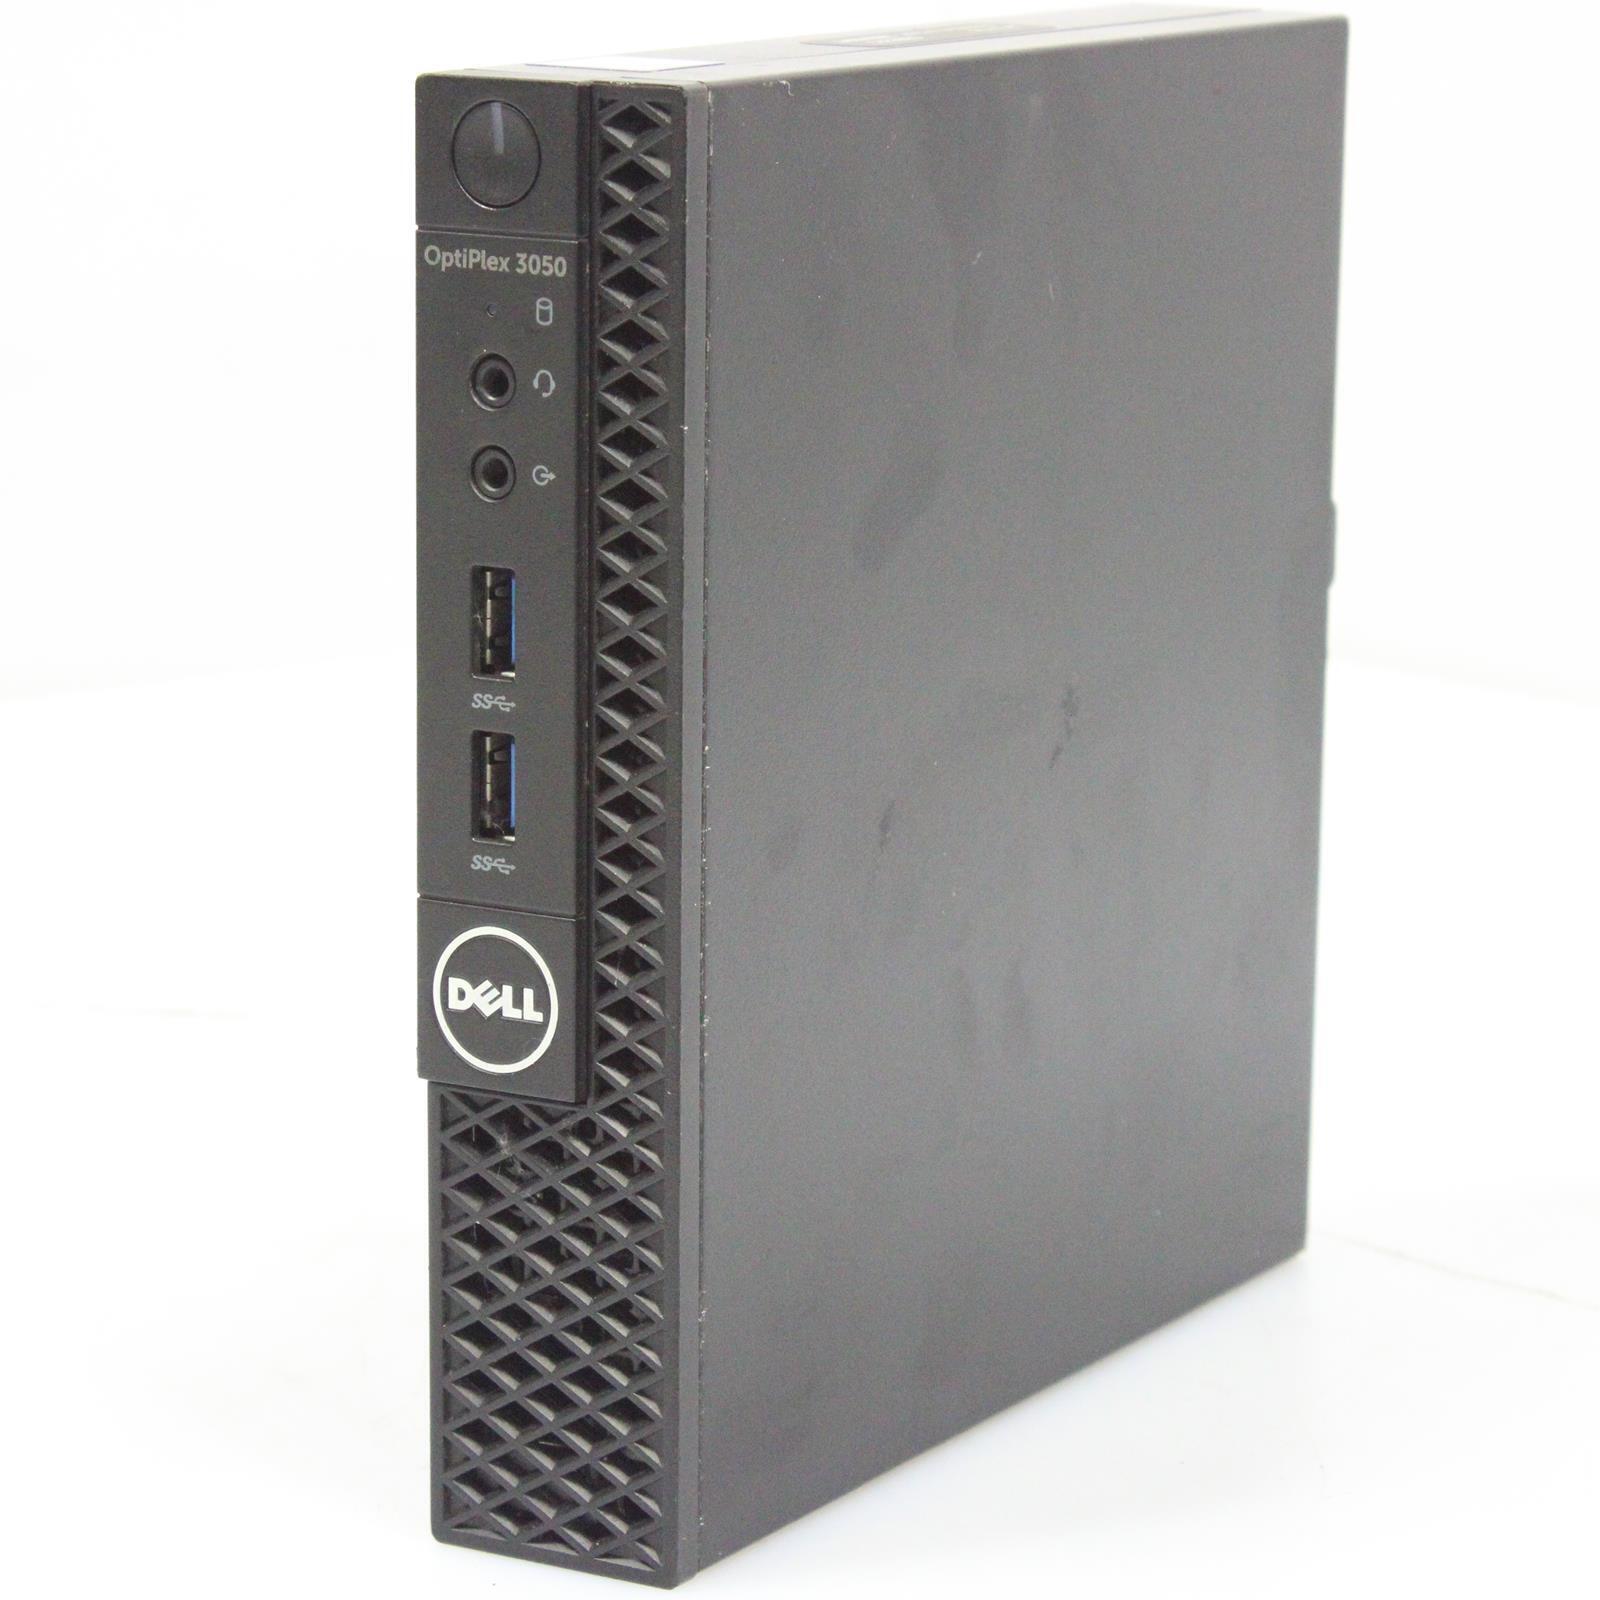 Dell OPTIPLEX 3050 Intel Core i5 6th Gen 4GB RAM No Drive/OS Desktop